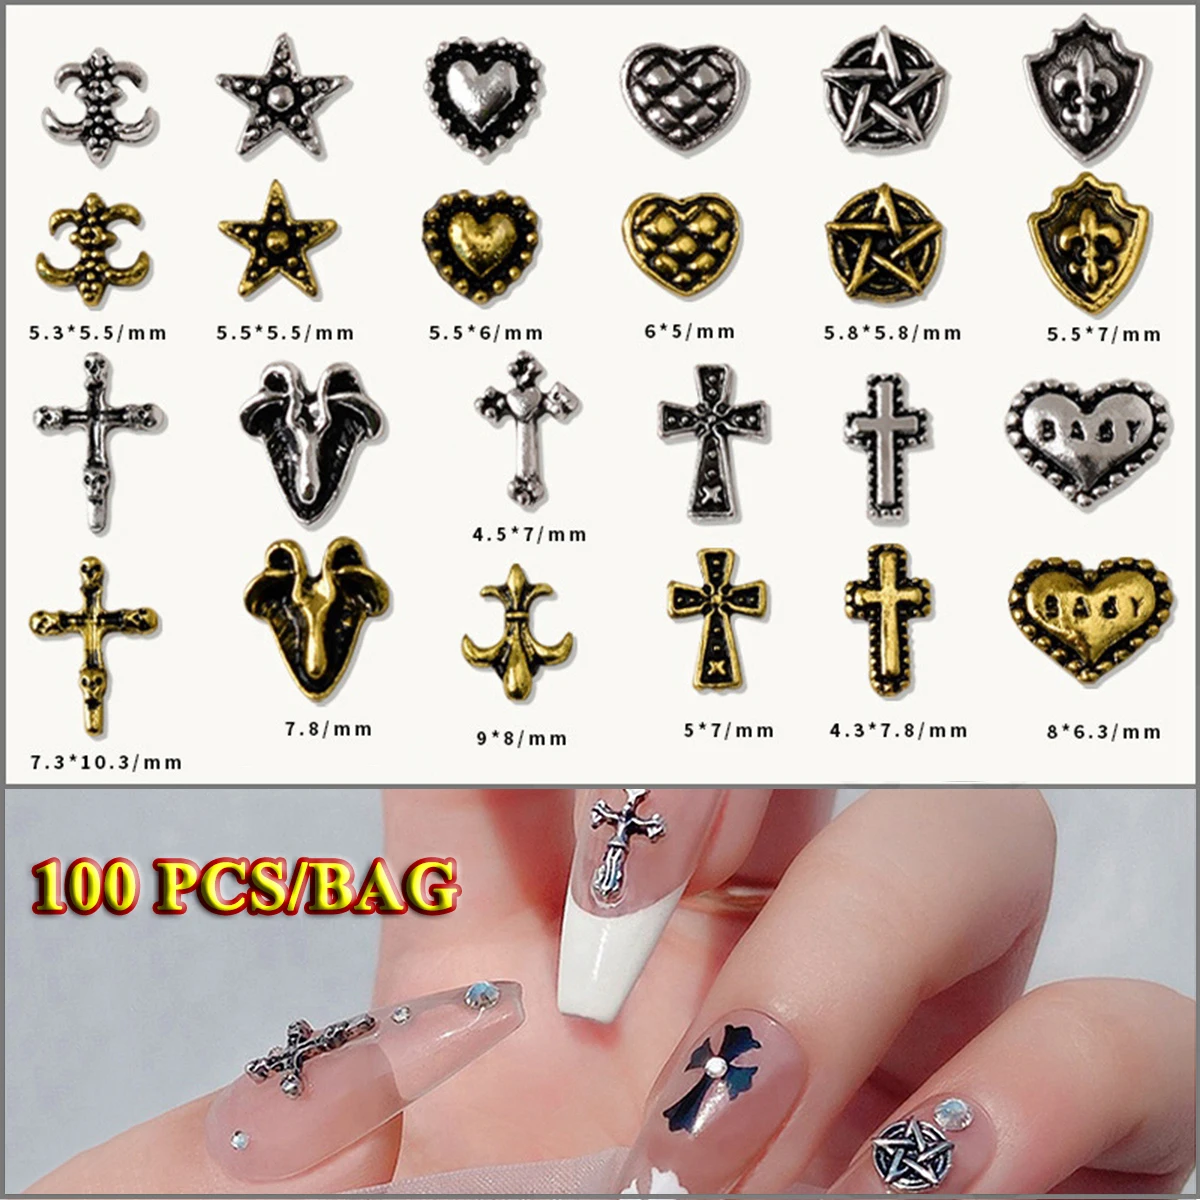 100 PCS/BAG Mixed Set Nail Decoration Jewelry Punk Style Personality Decorative Alloy Nail Art & Sticker